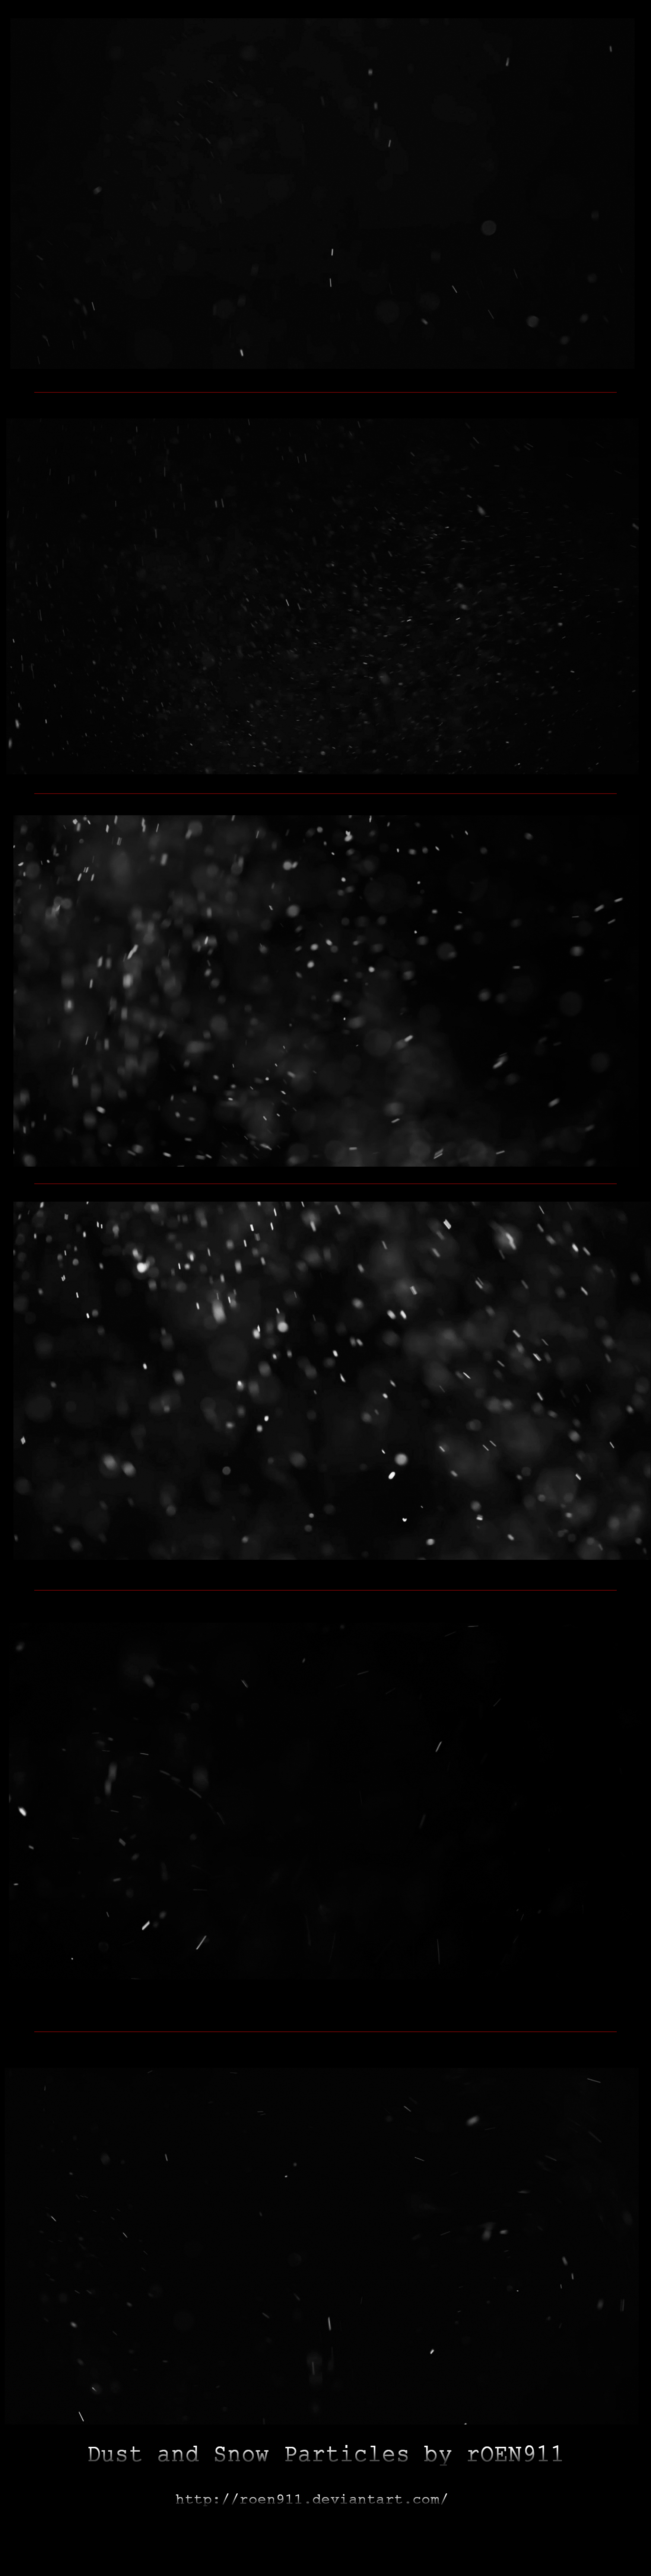 Snow & Dust Particles